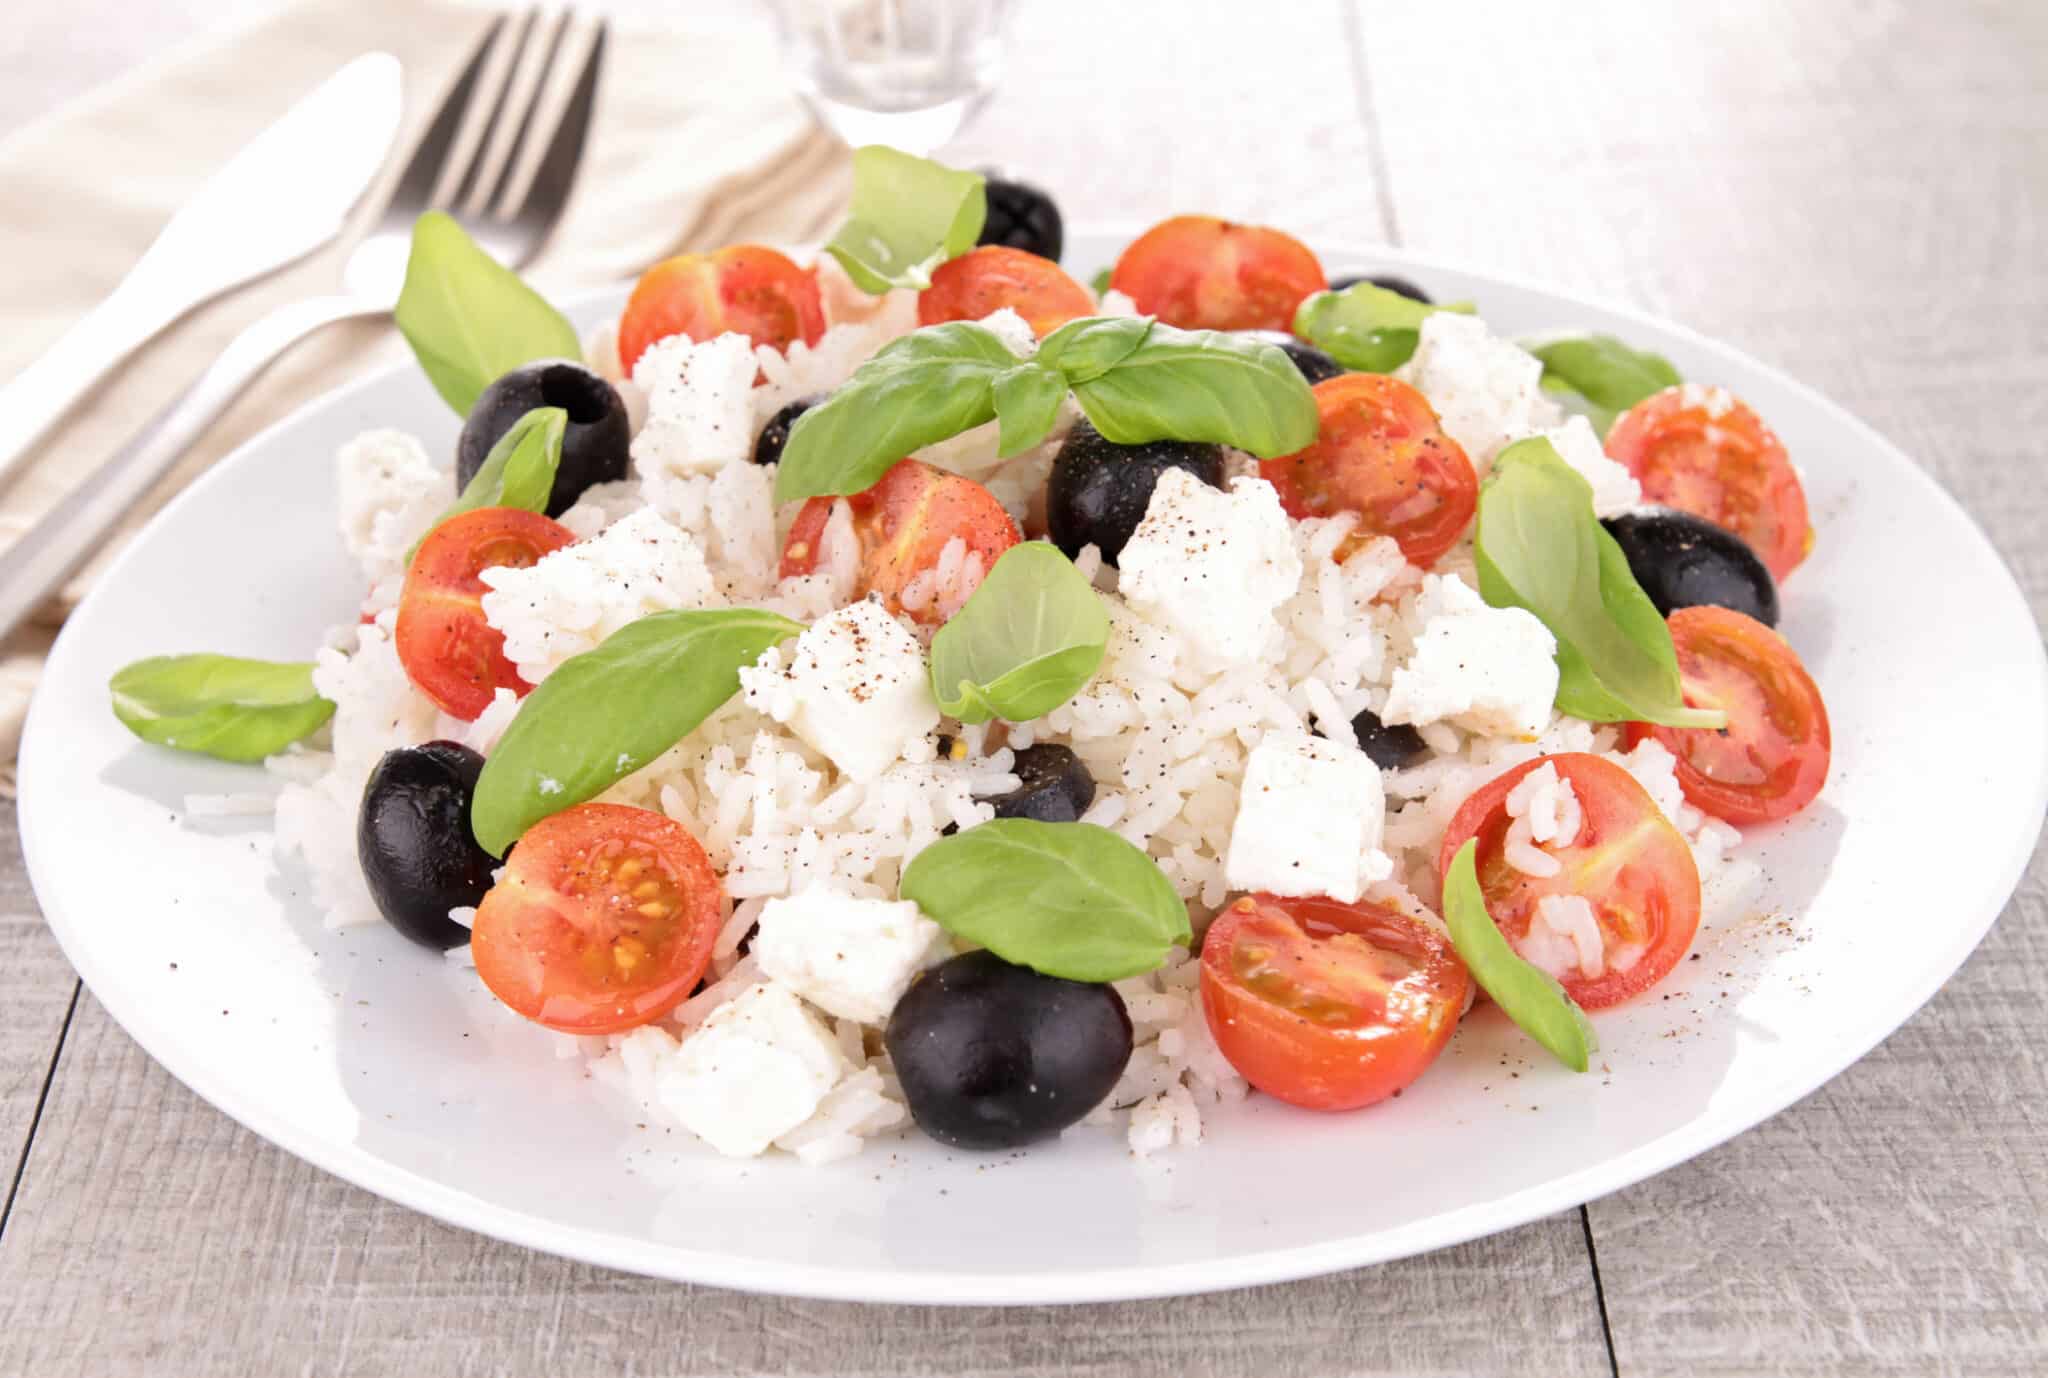 Les épices curieuses - salade méditerranéenne